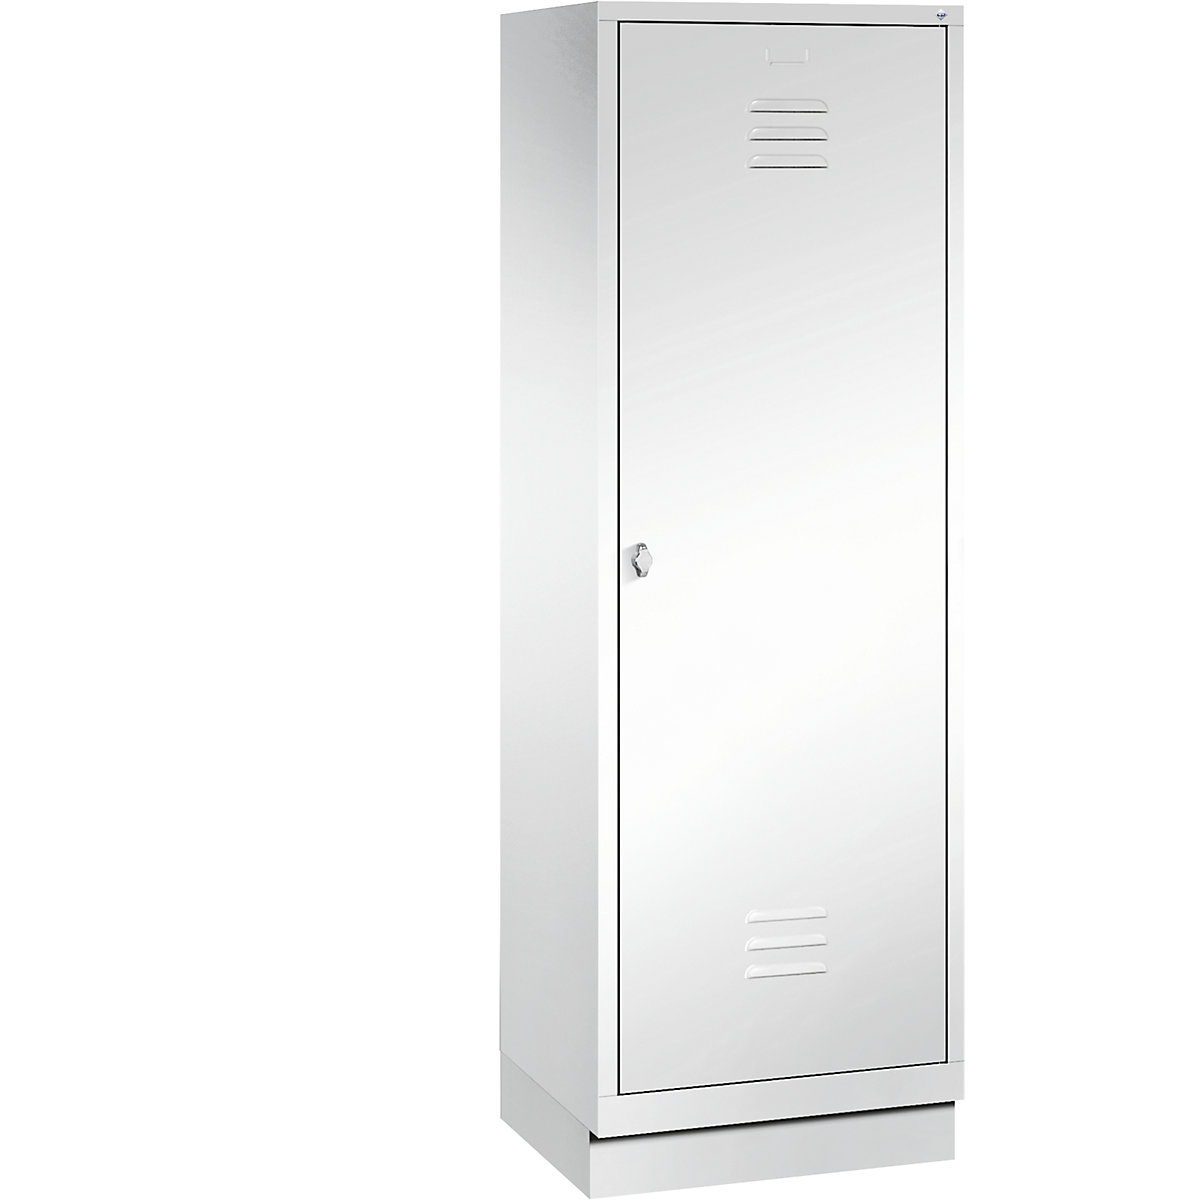 Šatní skříň se soklem CLASSIC s dveřmi přes 2 oddíly – C+P, 2 oddíly, šířka oddílu 300 mm, dopravní bílá